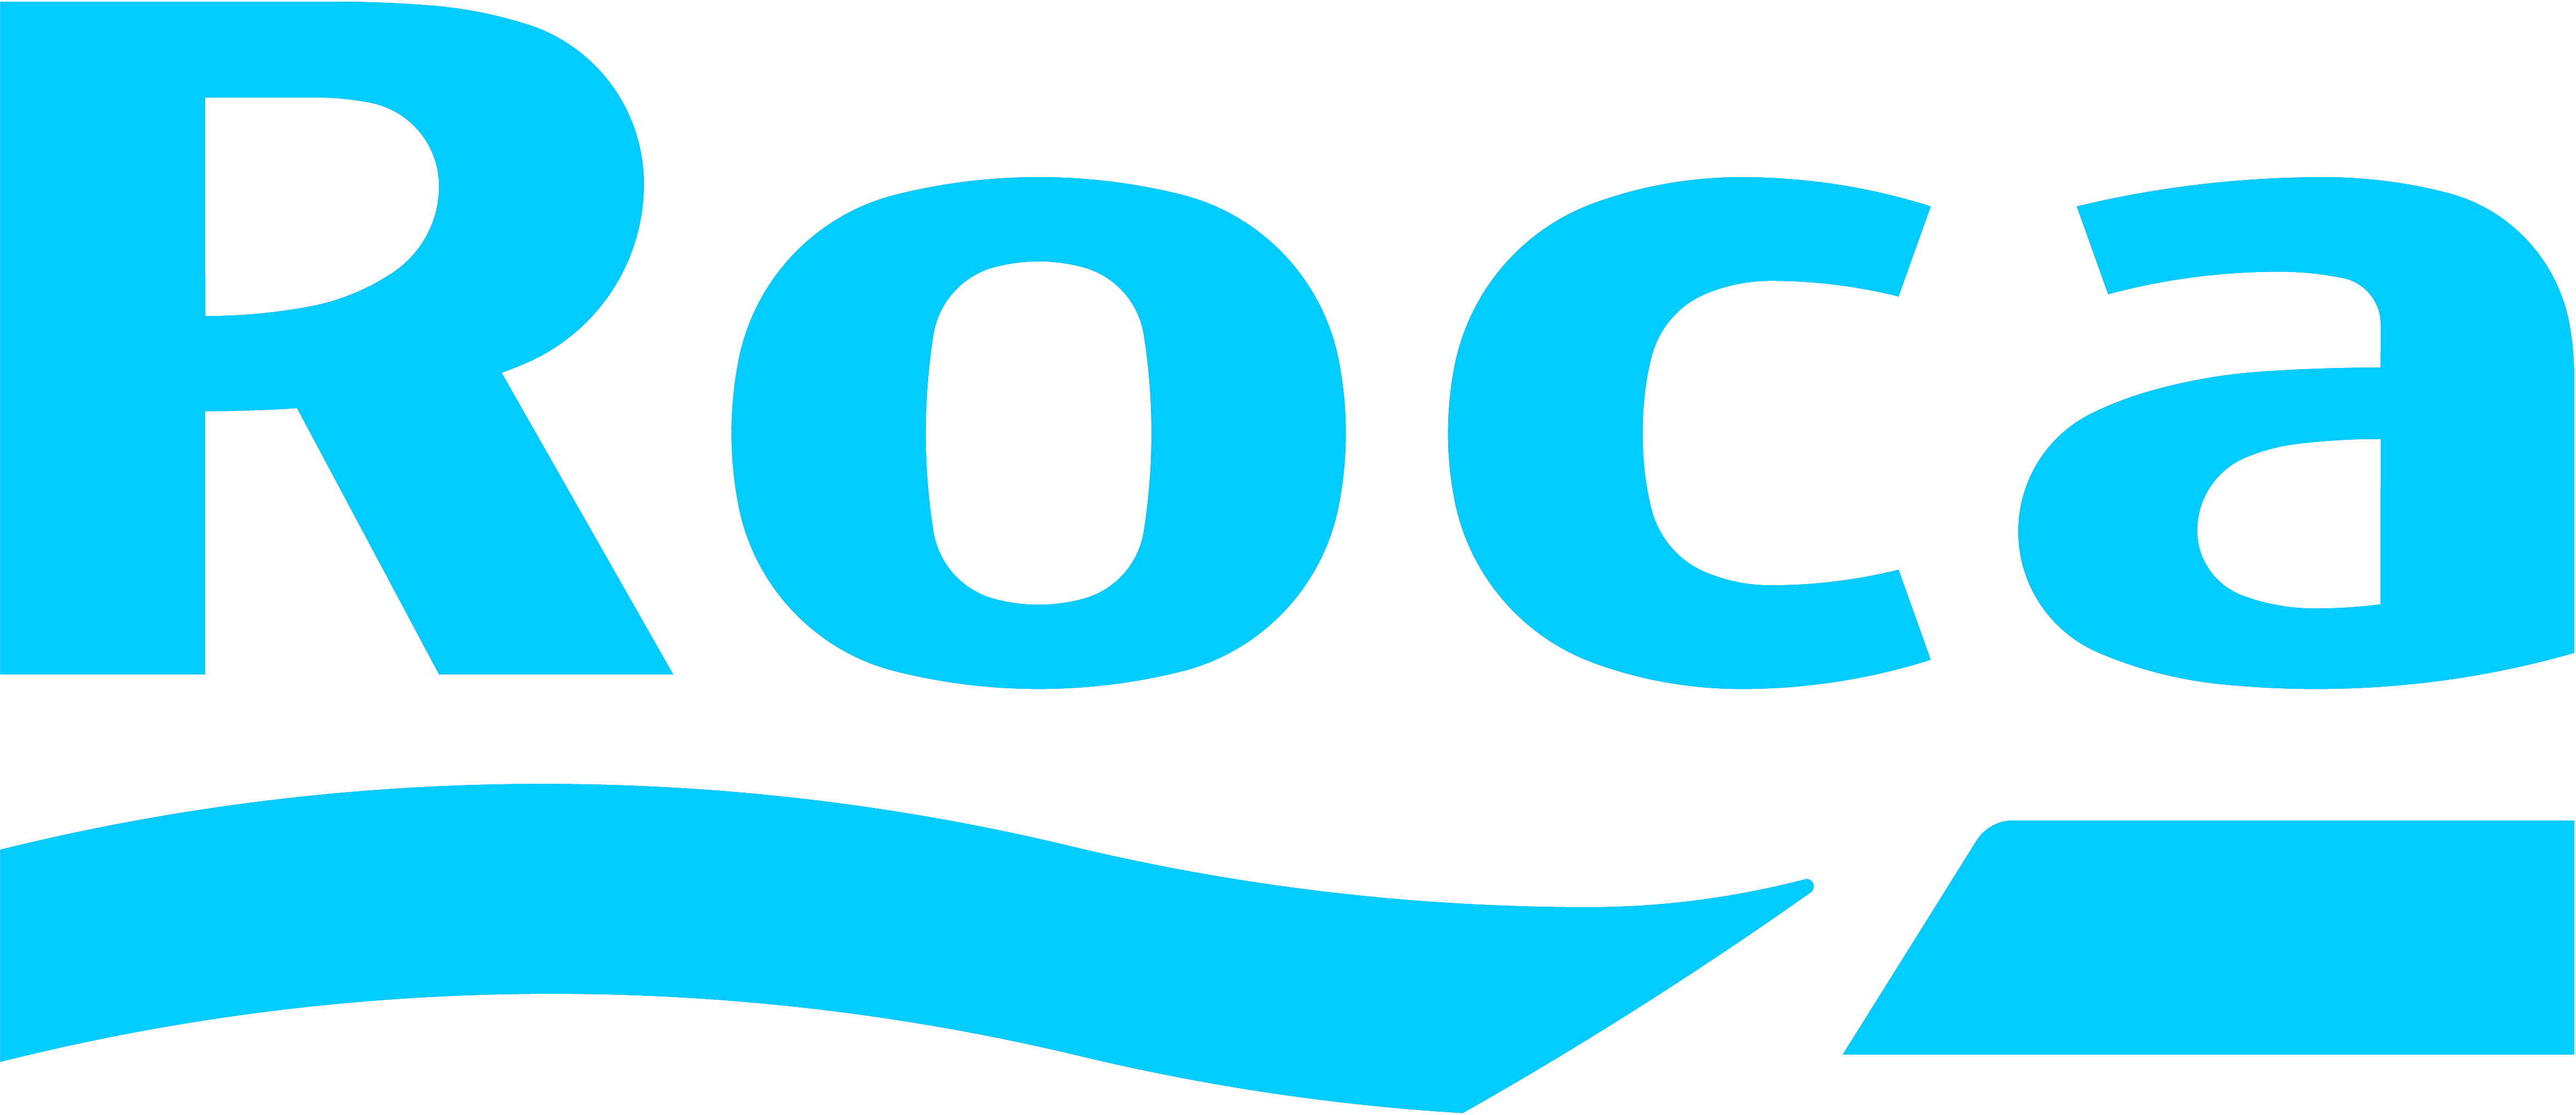 Логотип бренда Roca